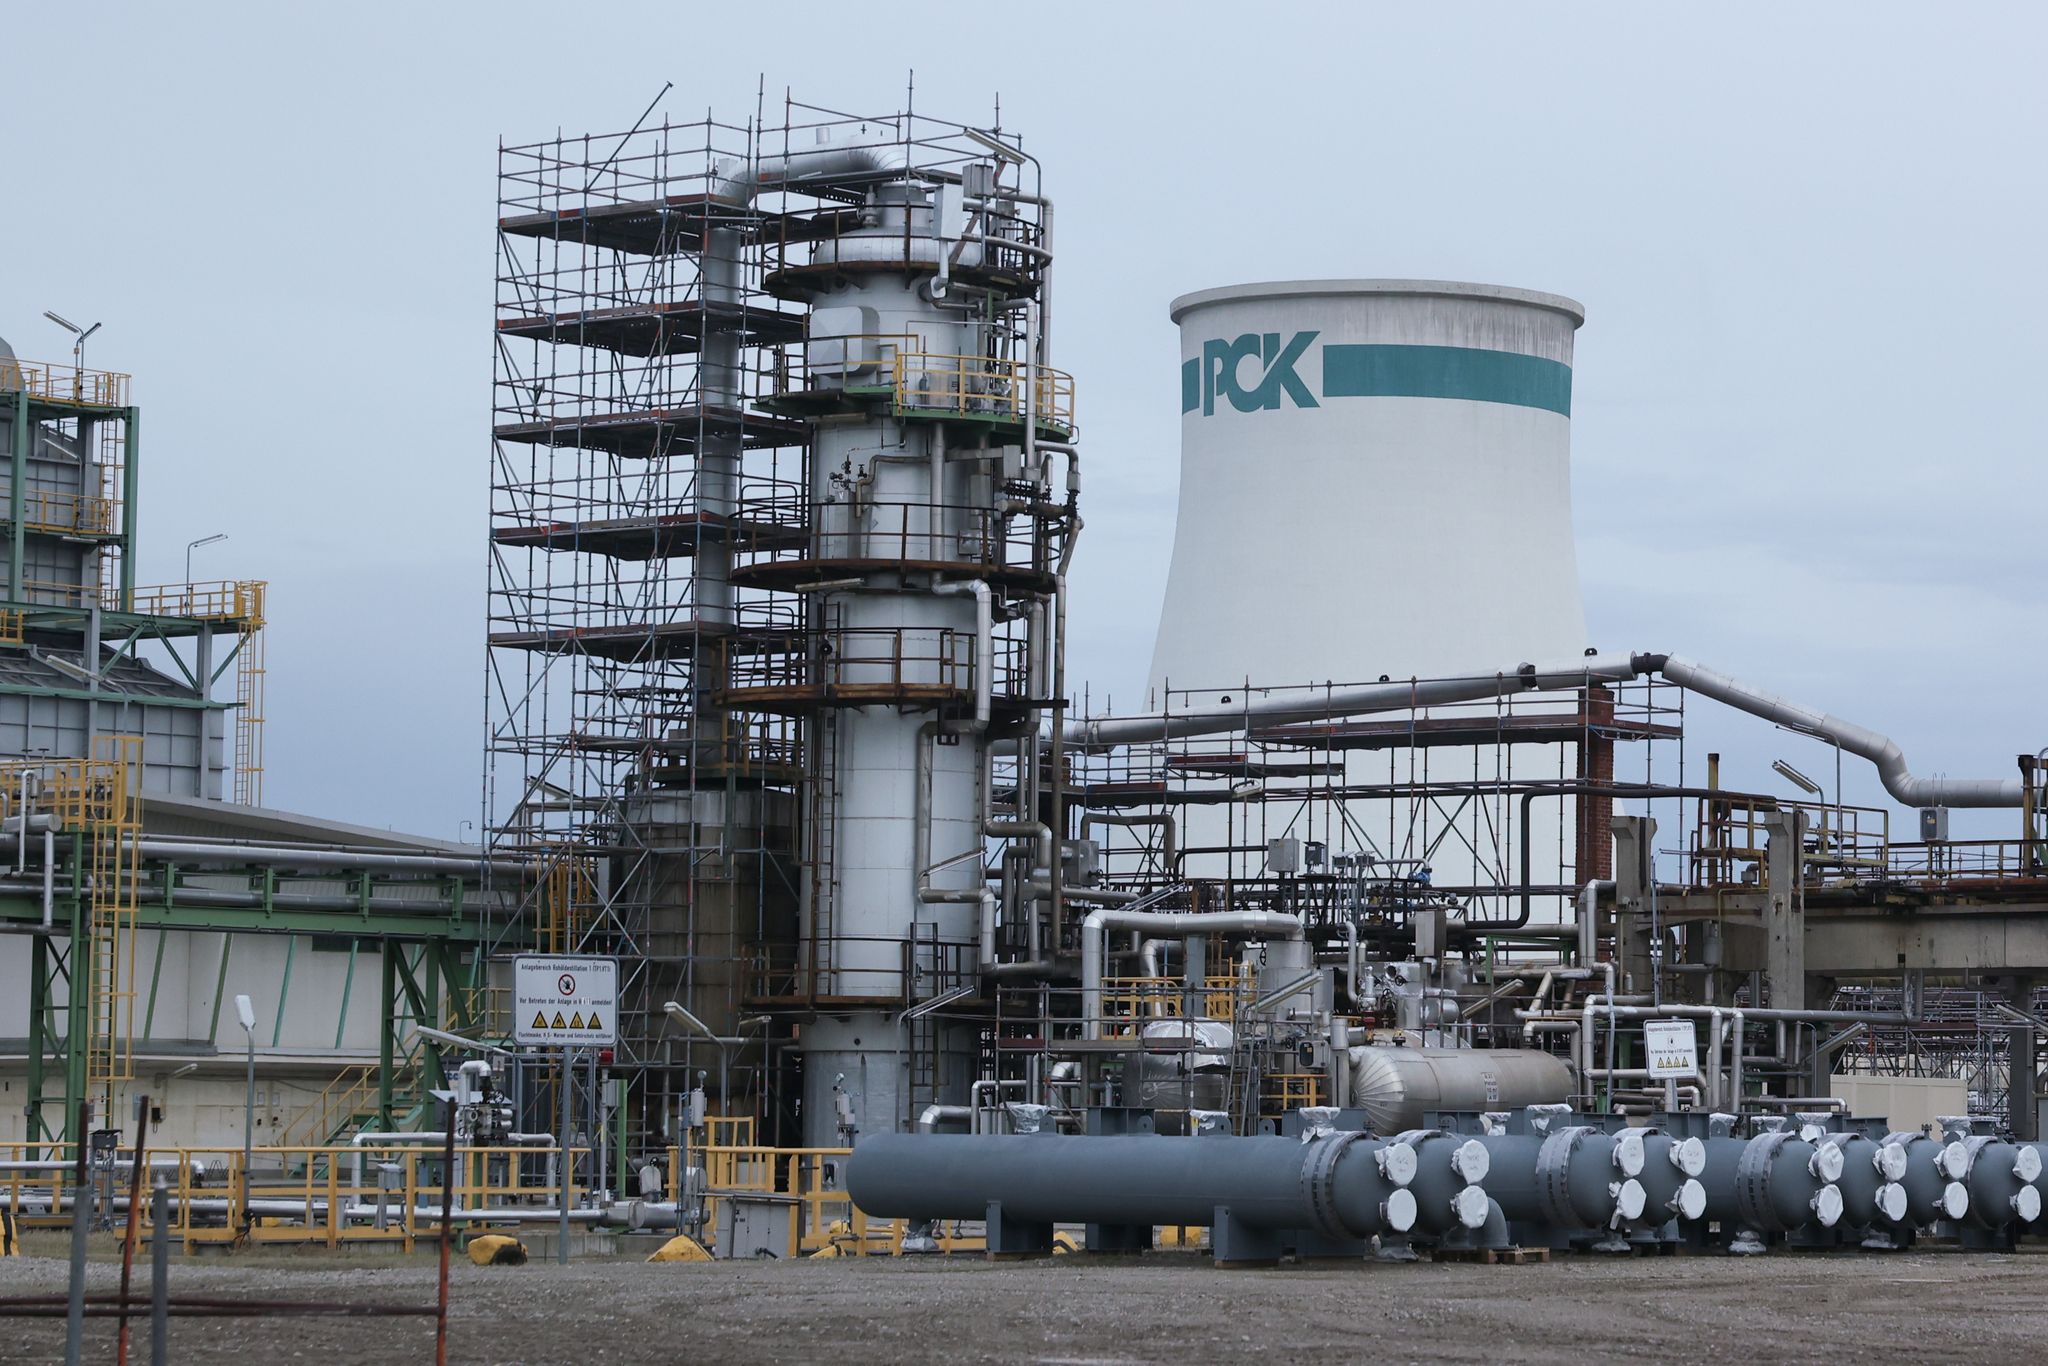 Ein Turm mit einem «PCK»-Logo ist auf dem Gelände der PCK-Raffinerie zu sehen.